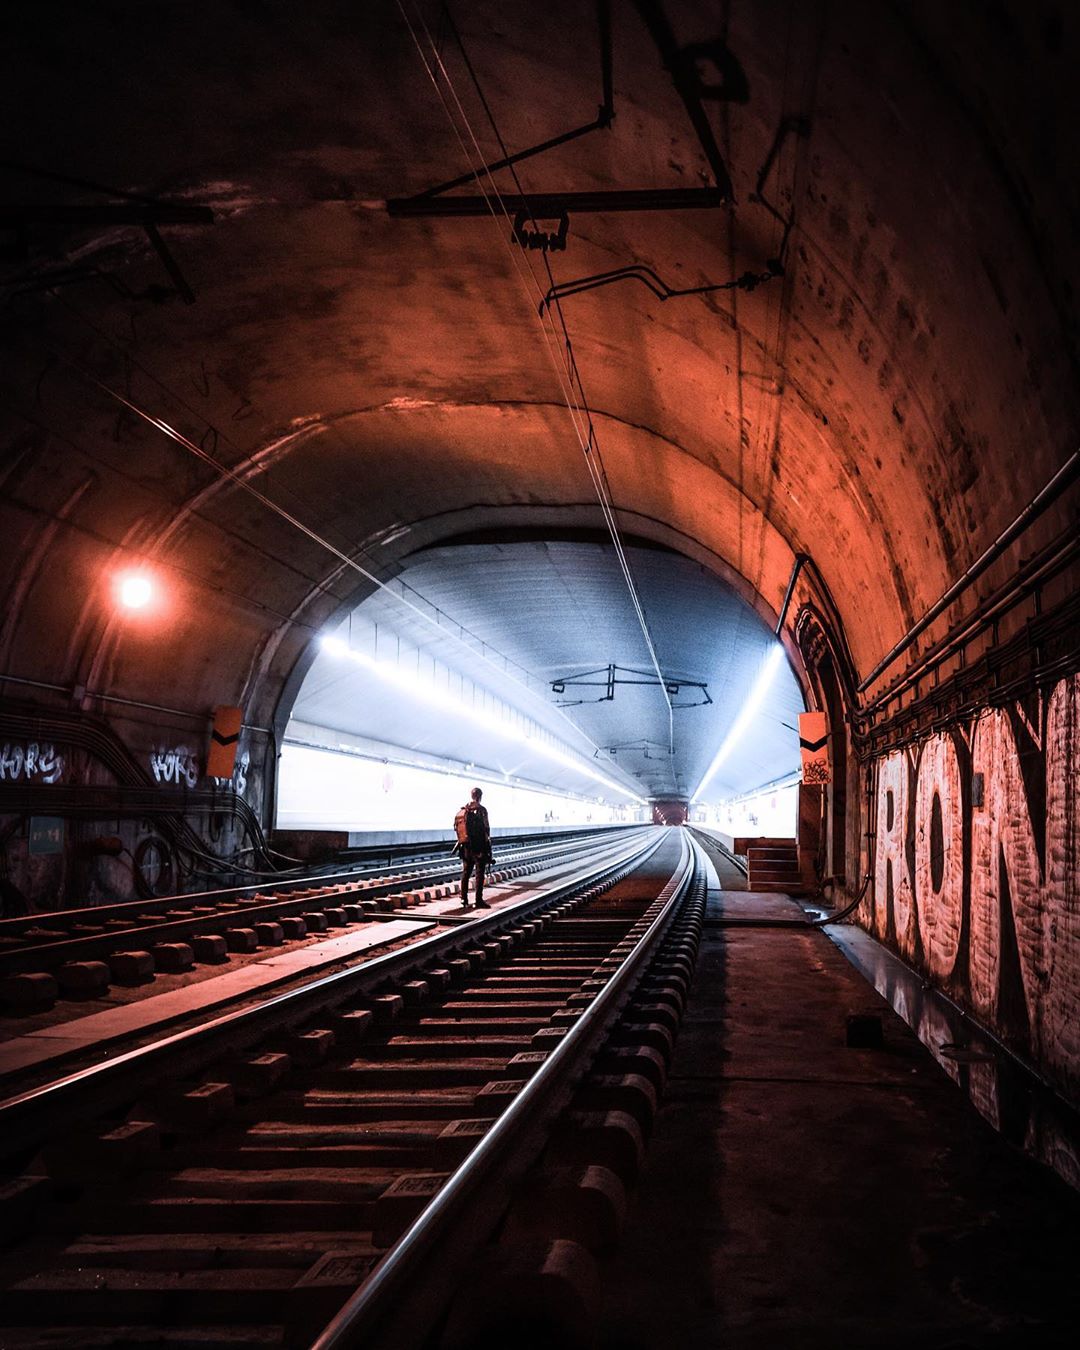 «Тёмная сторона» городов на концептуальных снимках Йеруна ван Дама города,подземка,тревел-фото